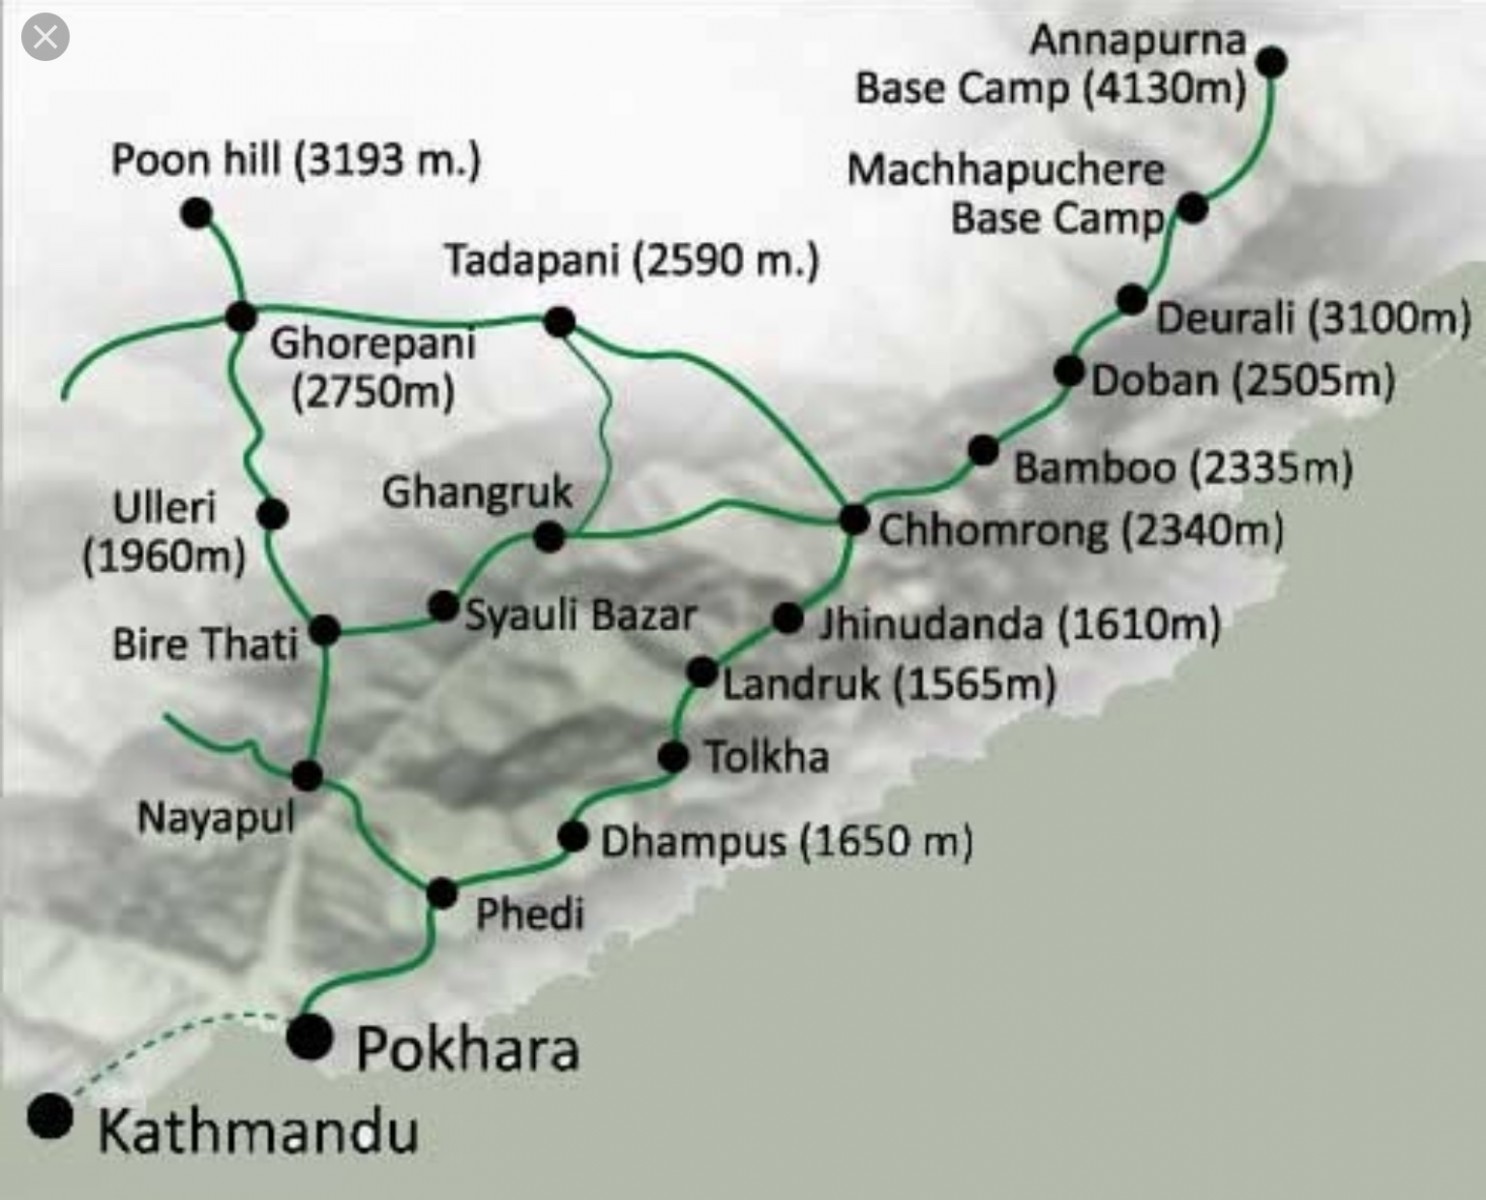 Annapurna Base Camp trek 7 days $605/- Map